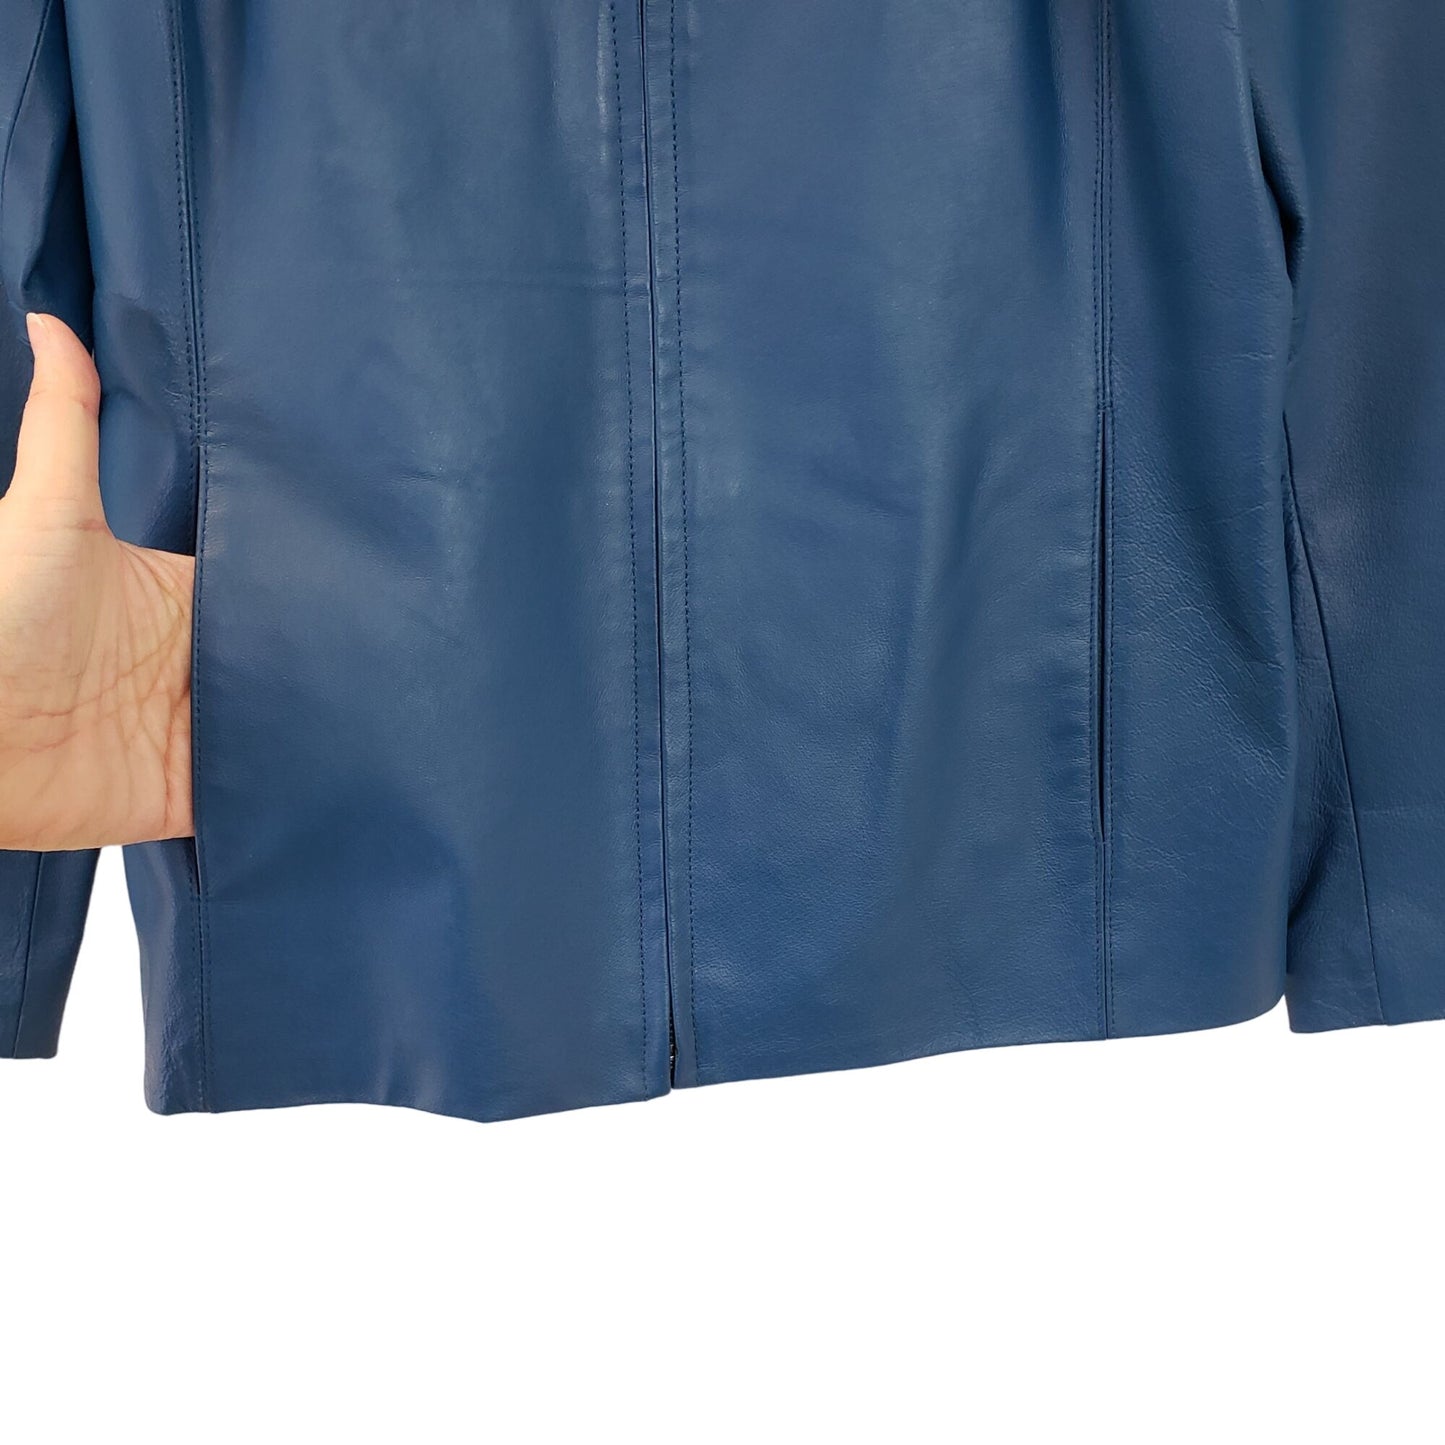 Worthington 100% Leather Full Zip Jacket Size Small